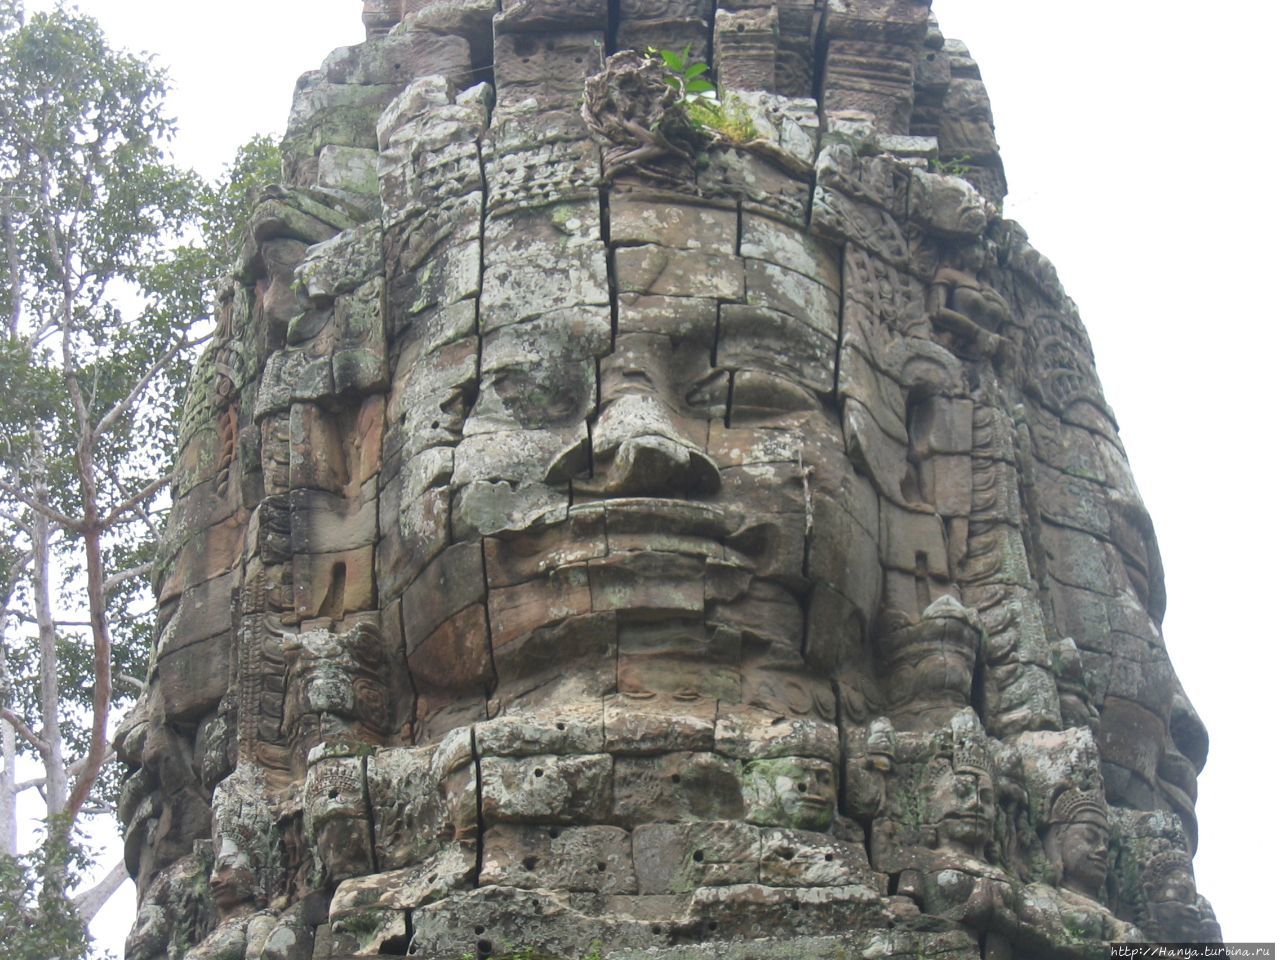 Лик Локешвара — Бодхисаттвы, представляющий сострадание Будды на воротах-гопурах в храме Та Пром Ангкор (столица государства кхмеров), Камбоджа